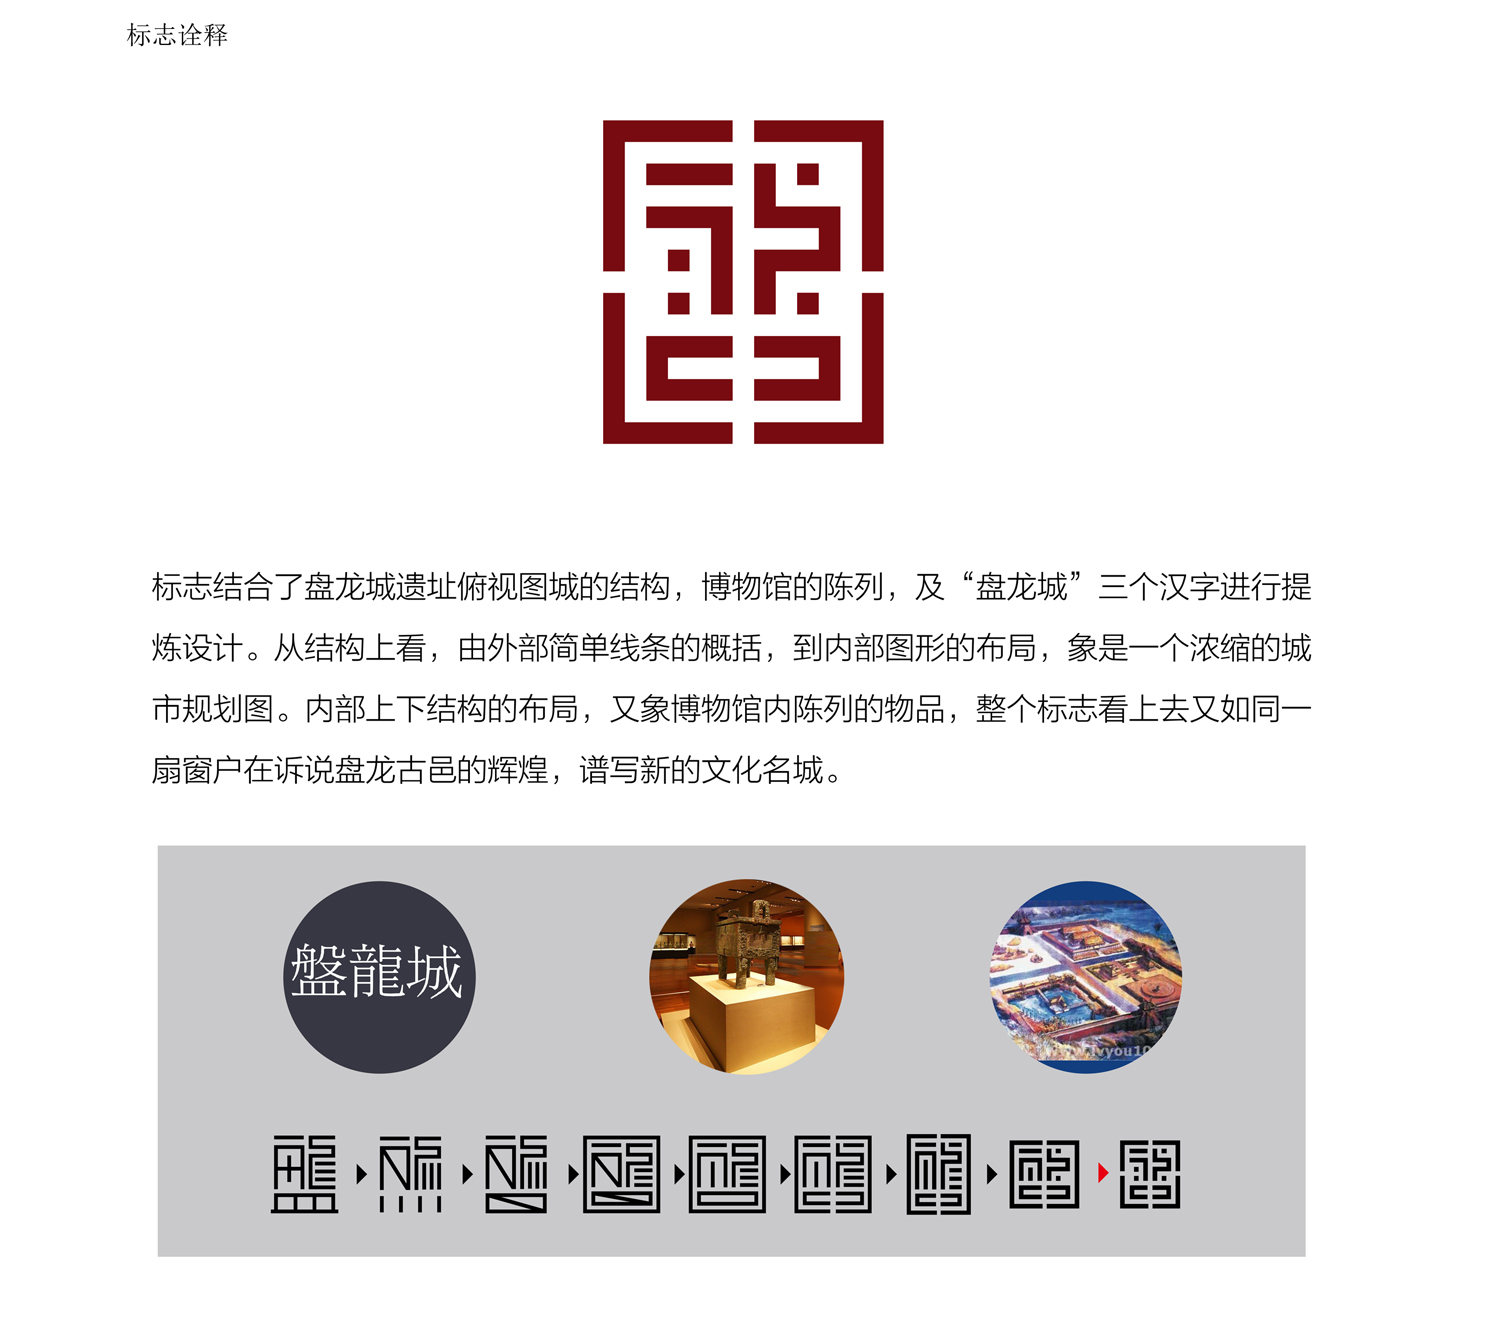 盘龙城遗址博物馆标志设计方案